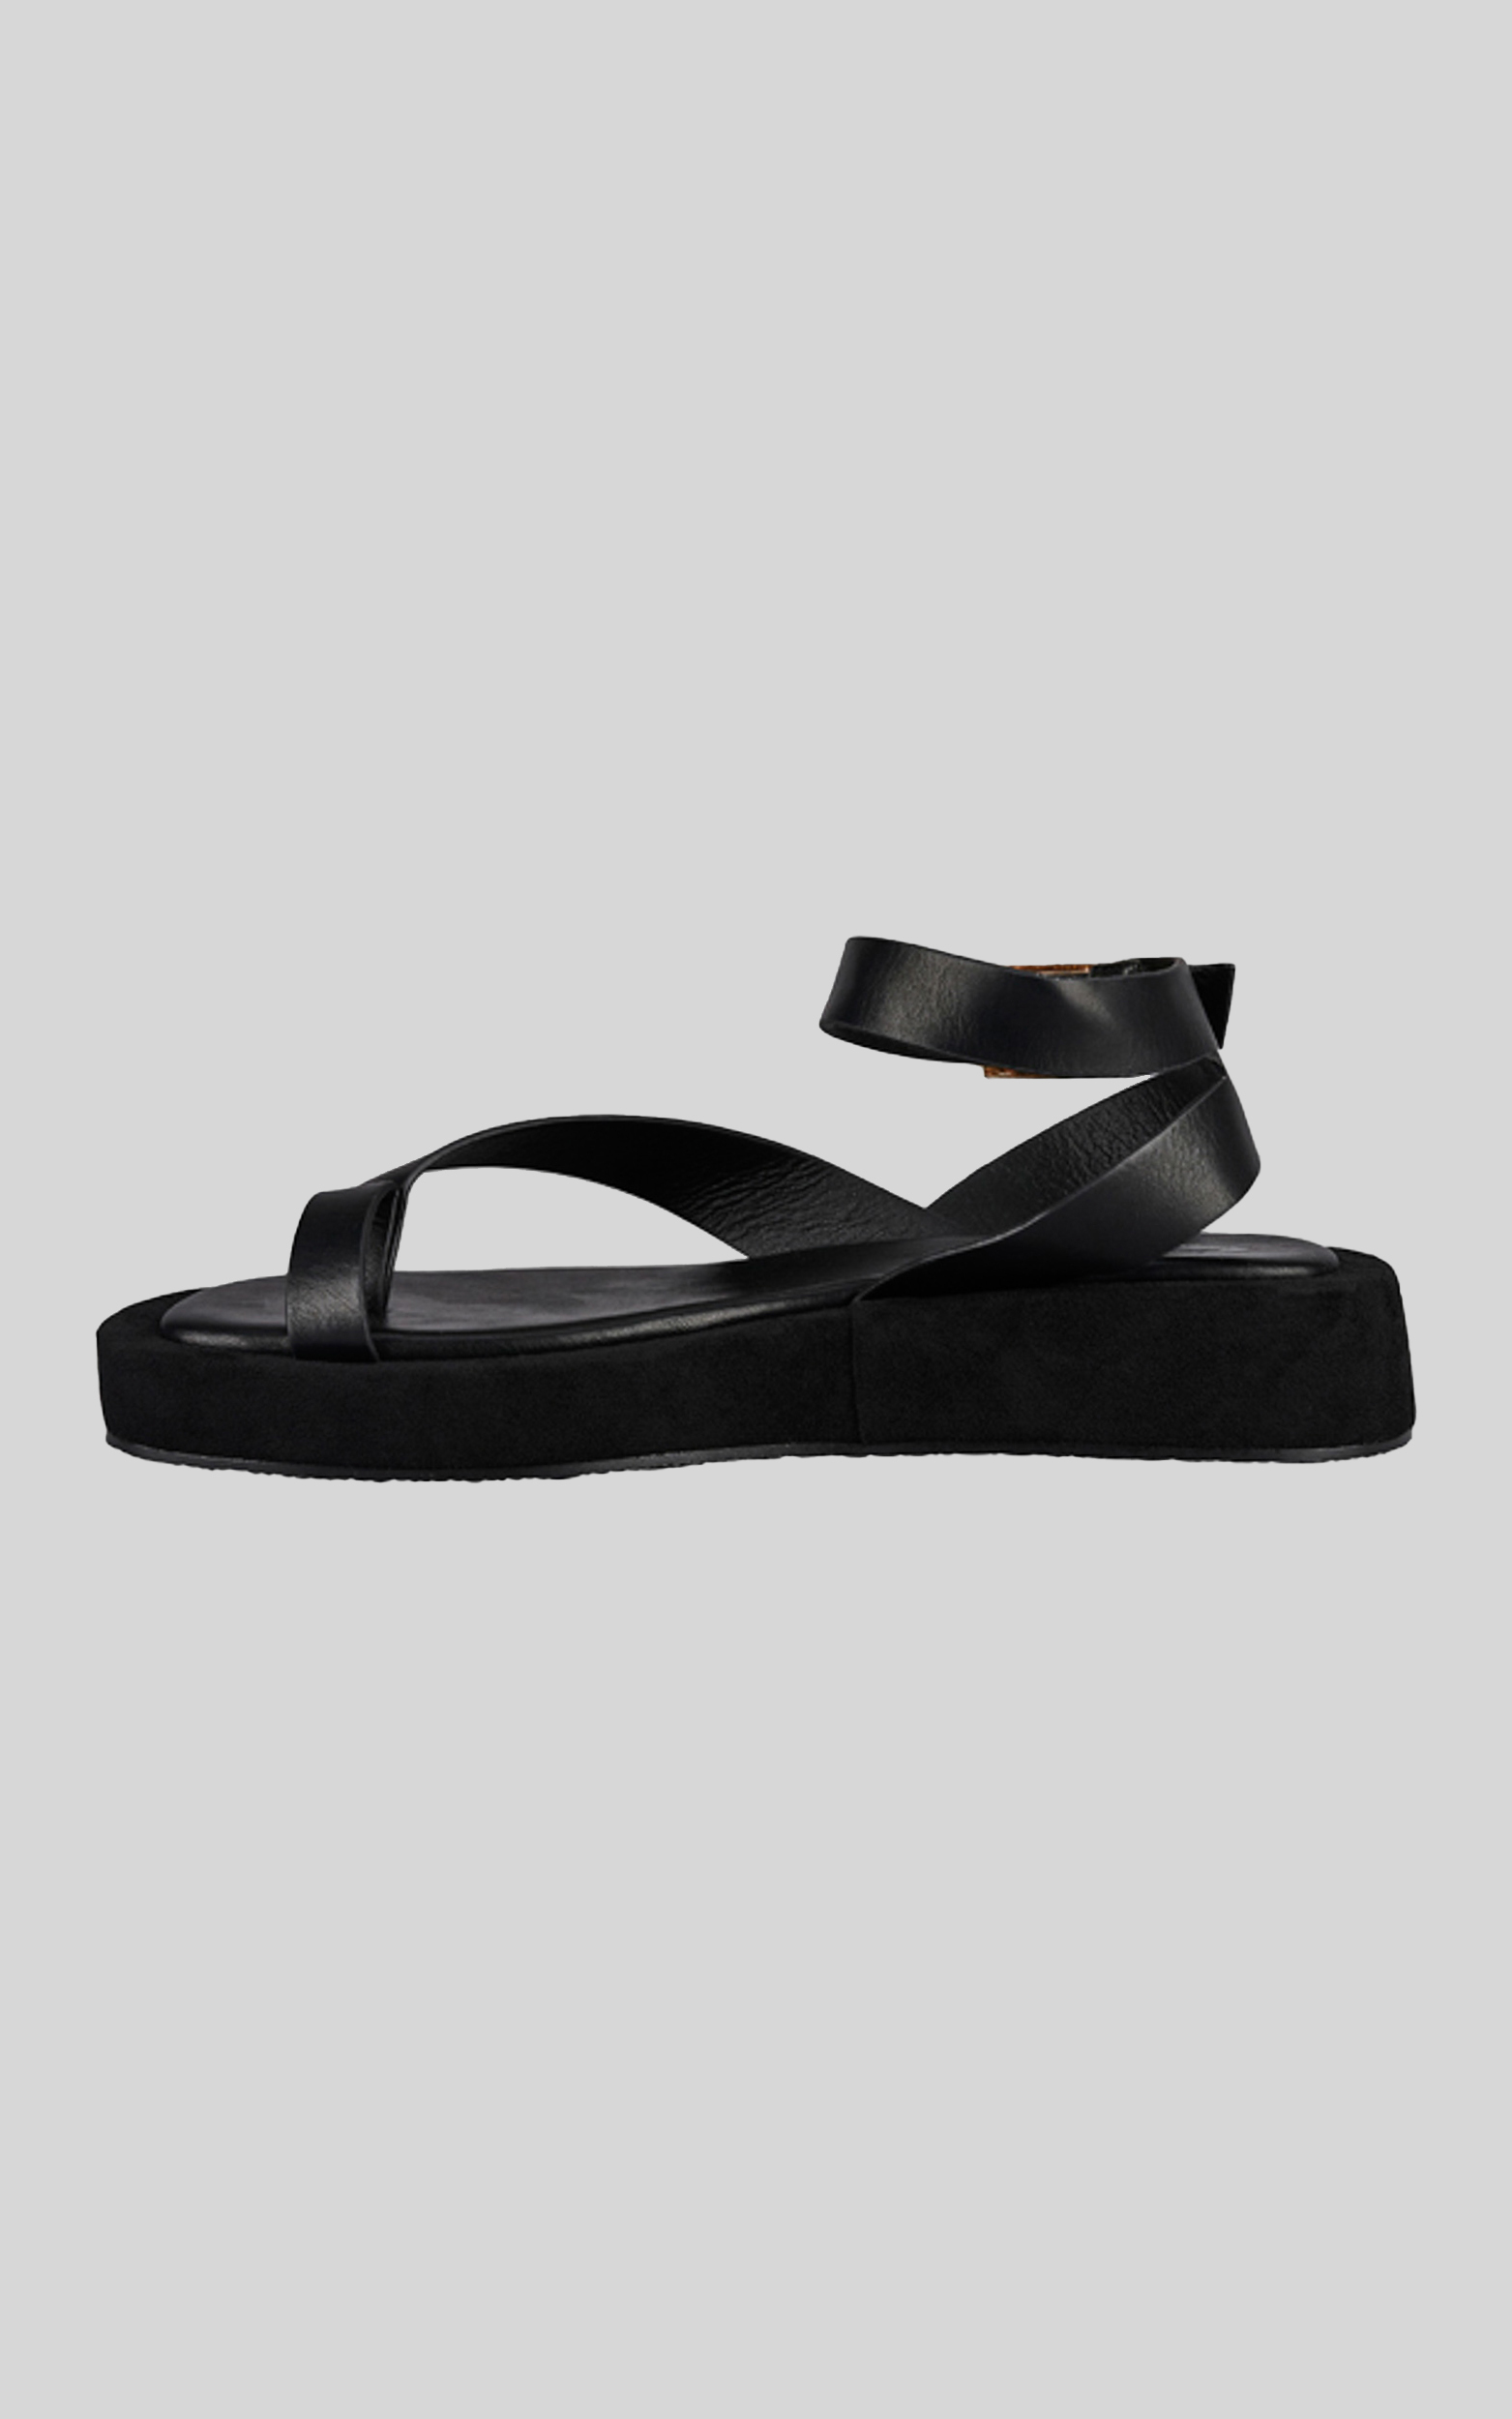 St Sana - Zelda Flatform Sandals in Black - 06, BLK1, hi-res image number null